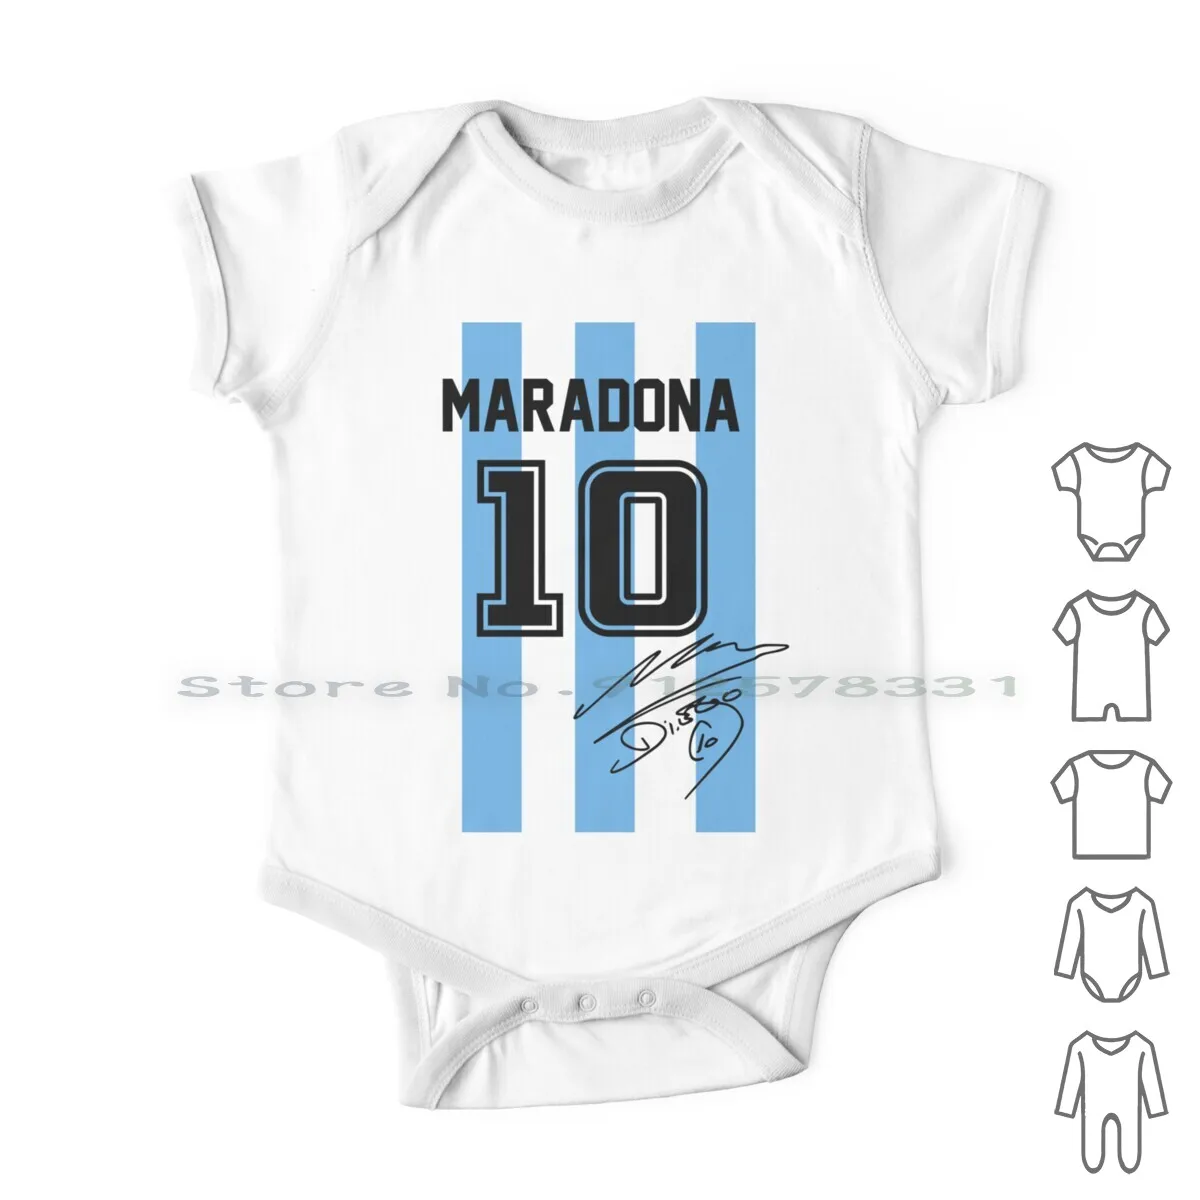 Maradona Jersey neonato vestiti pagliaccetti tute di cotone Diego Maradona dieci Argentina N10 Calcio Calcio Calcio Giocatore